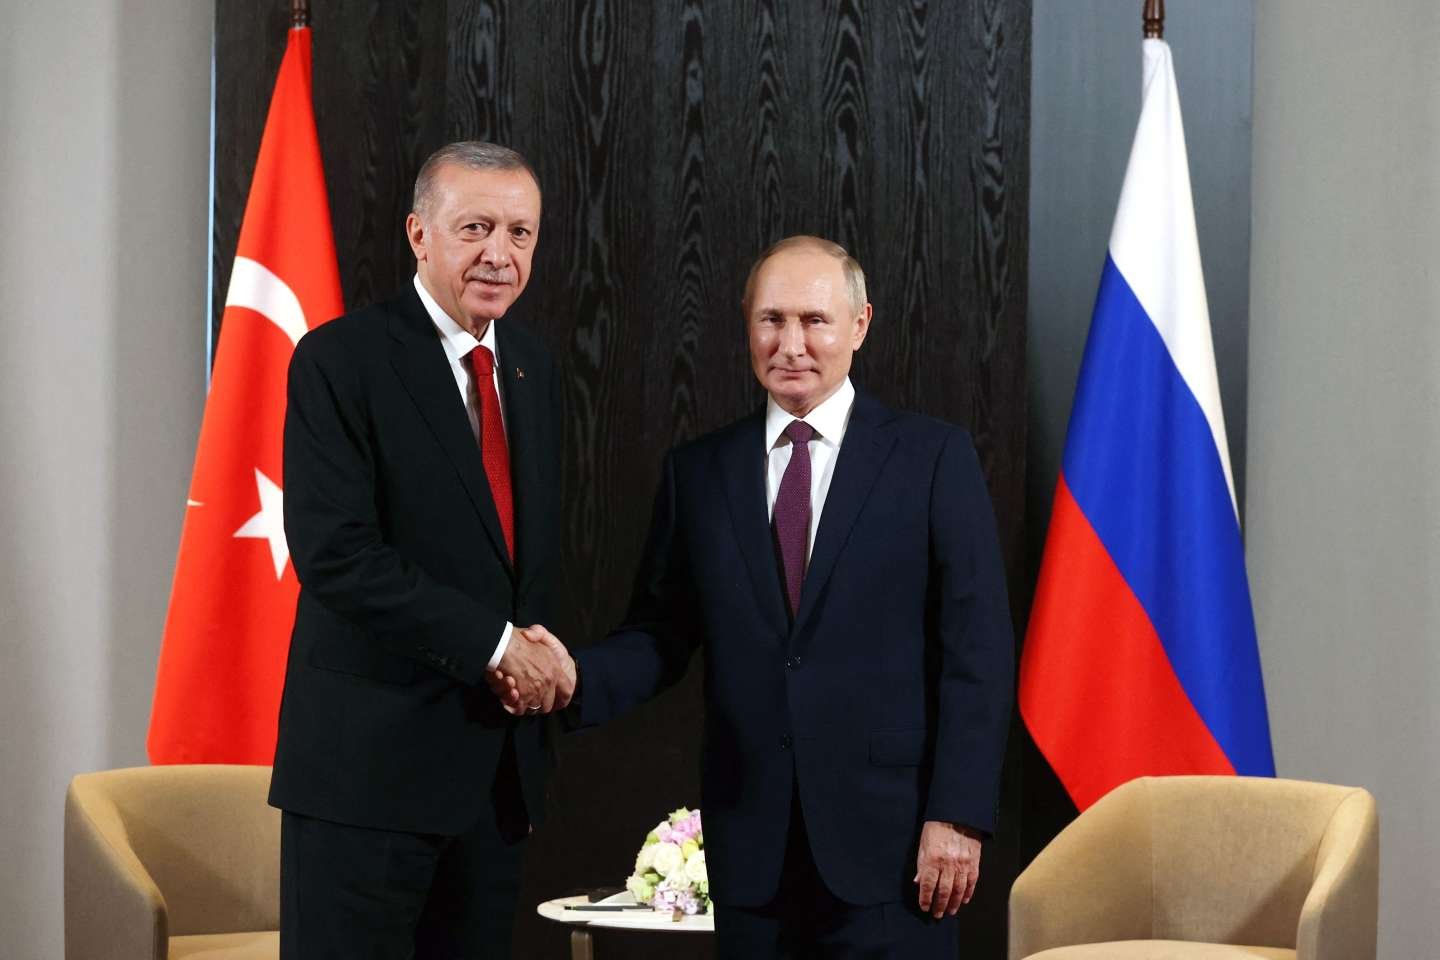  Putin ar urma să vină în Turcia „în curând”, potrivit unui consilier al Kremlinului